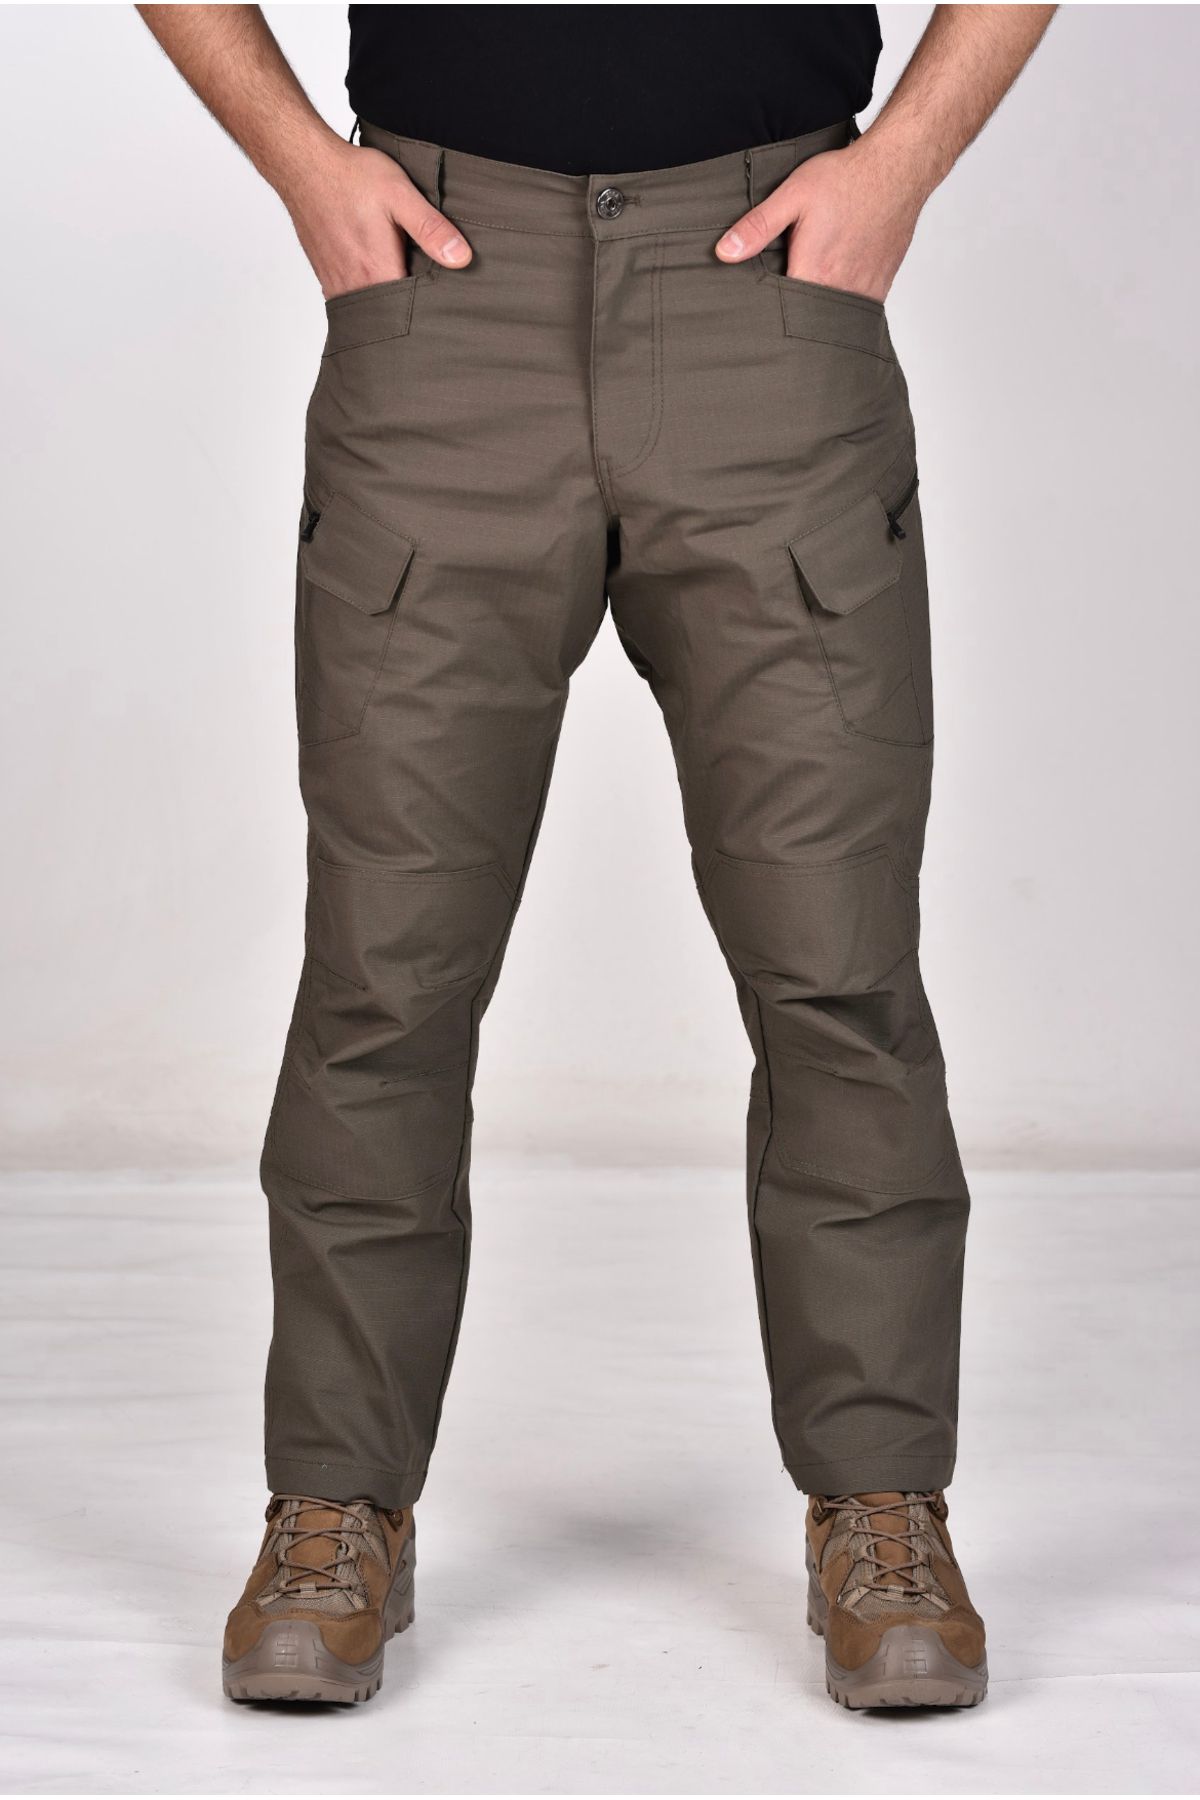 Seba Collection Erkek Haki Likralı Ripstop Outdoor & Spor Giyim Taktik Pantolon